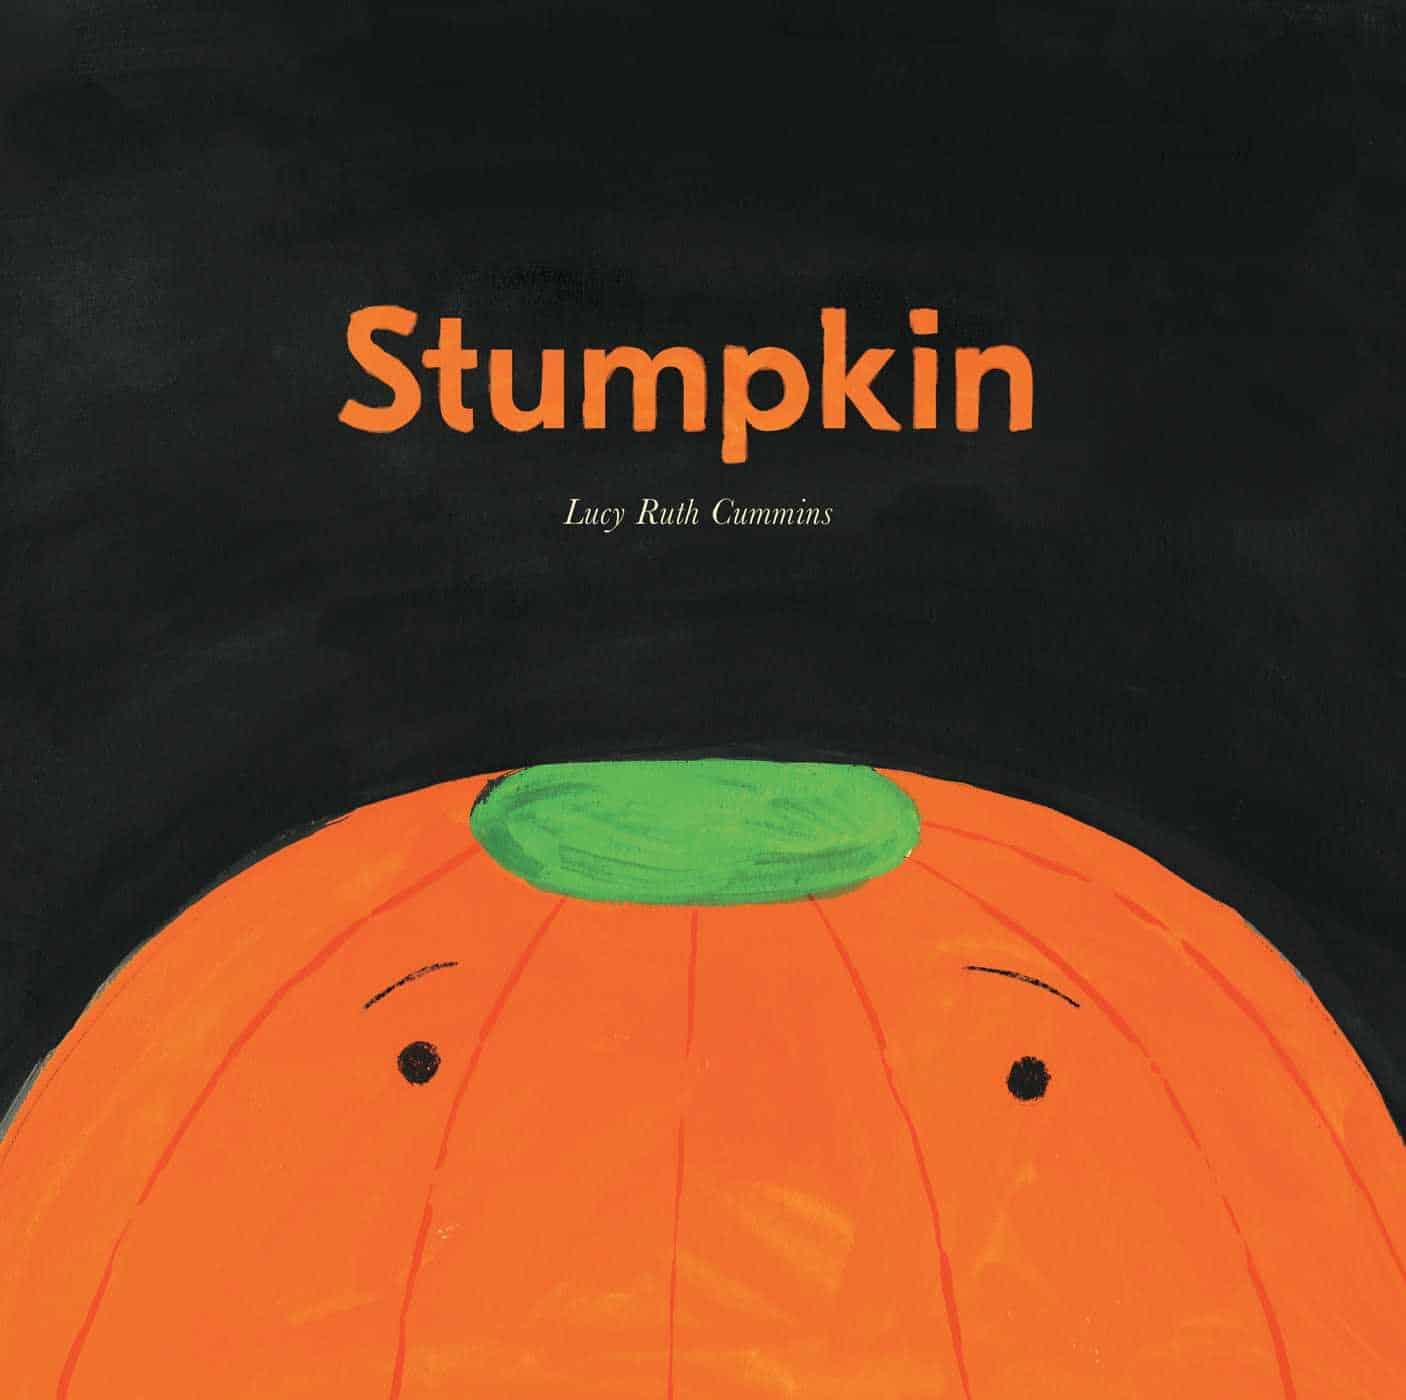 Stumpkin children's book